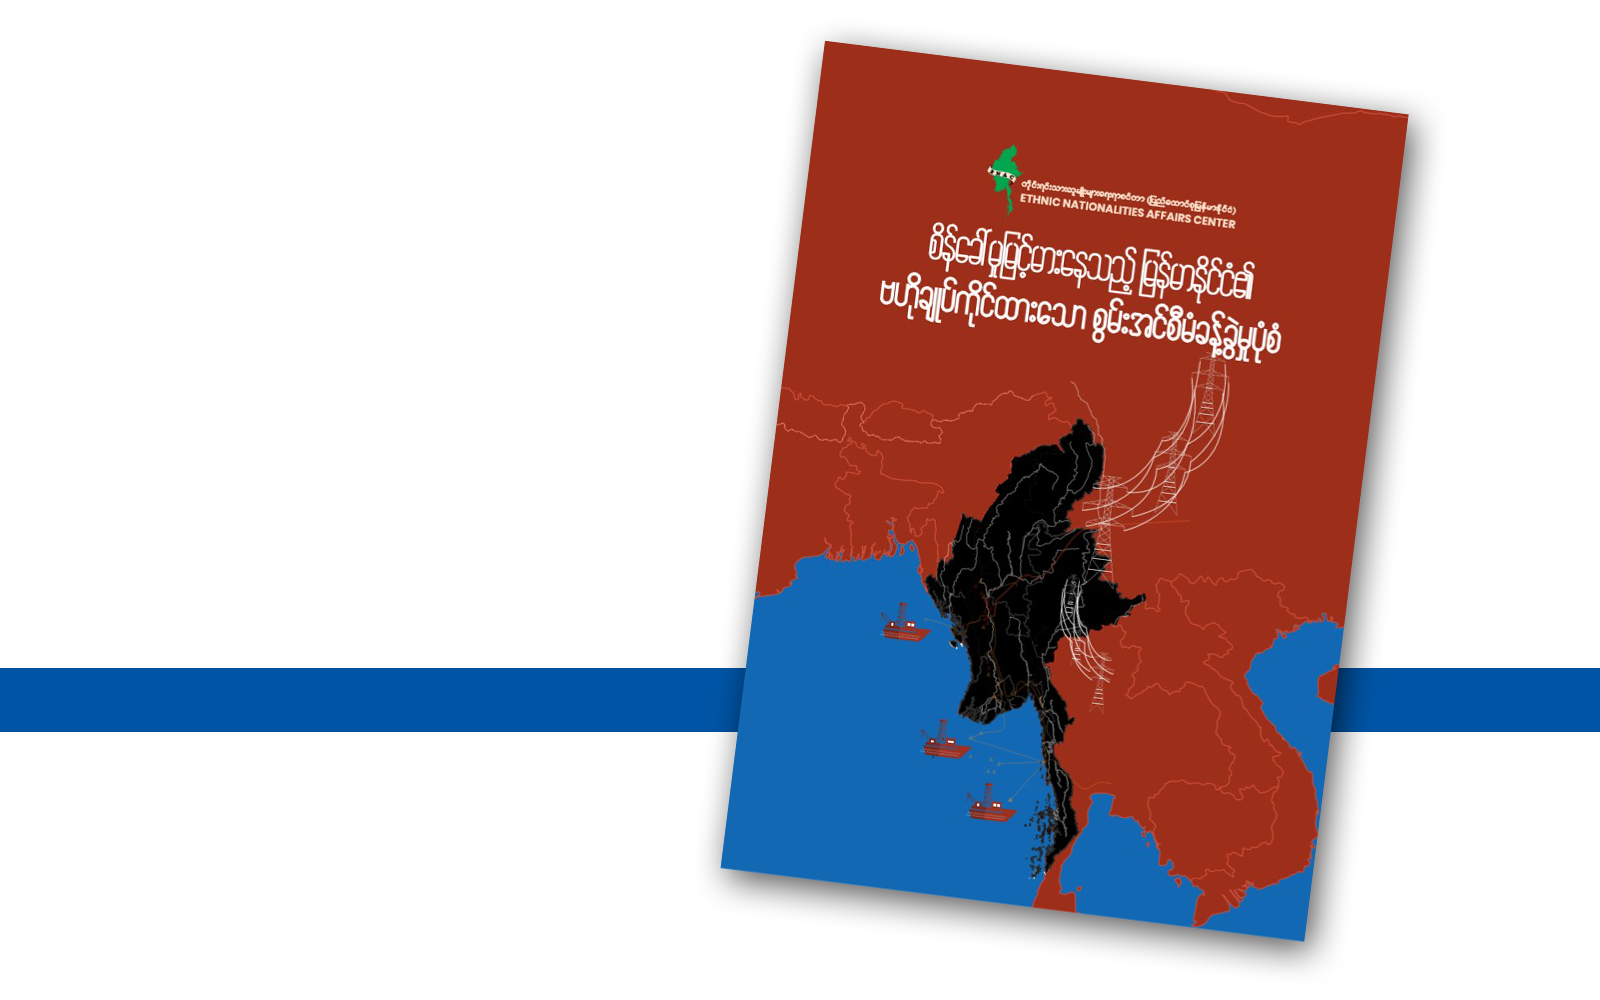 စိန်ခေါ်မှုမြင့်မားနေသည့် မြန်မာနိုင်ငံ၏ ဗဟိုချုပ်ကိုင်ထားသော စွမ်းအင်စီမံခန့်ခွဲမှုပုံစံ (သုတေသနစာတမ်း မိတ်ဆက်)